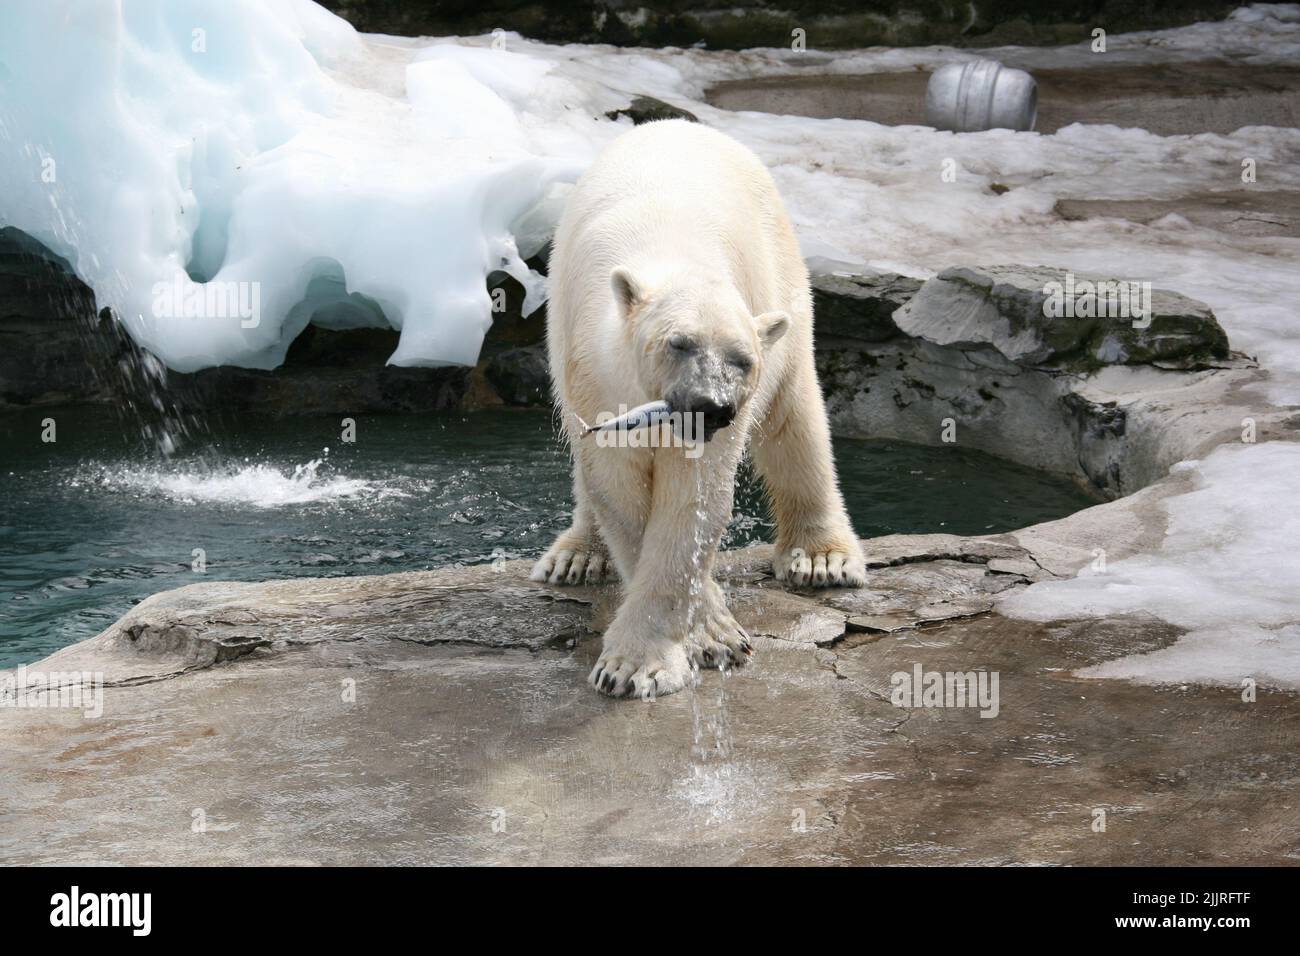 Ein Eisbär, der im Zoo einen Fisch isst und auf dem gepflasterten, eisigen Boden am Wasser steht Stockfoto